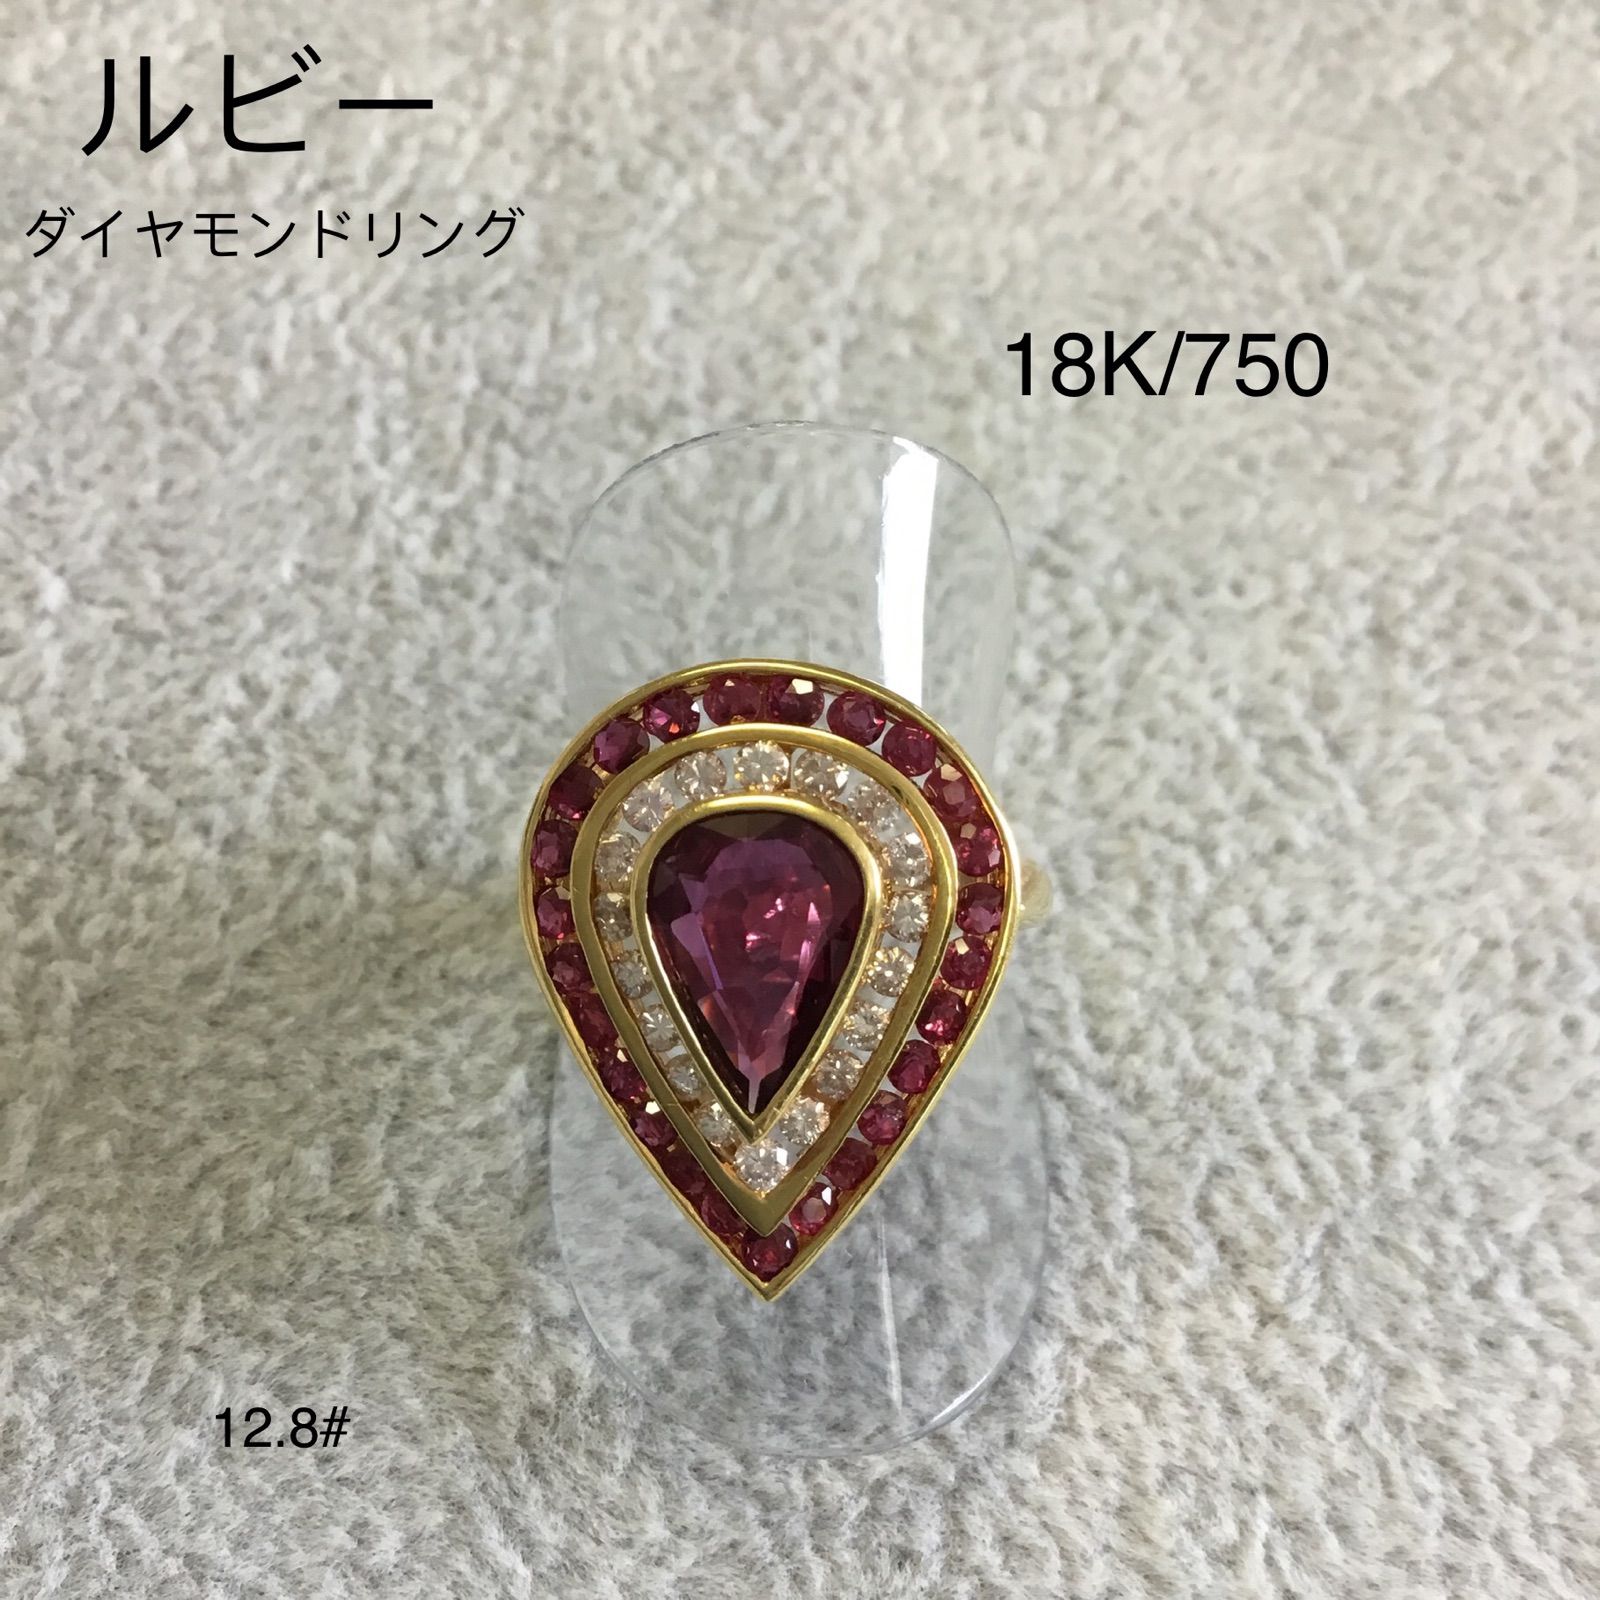 ルビー ダイヤモンド リング K18/750 12.8号 - KTVTG - メルカリ